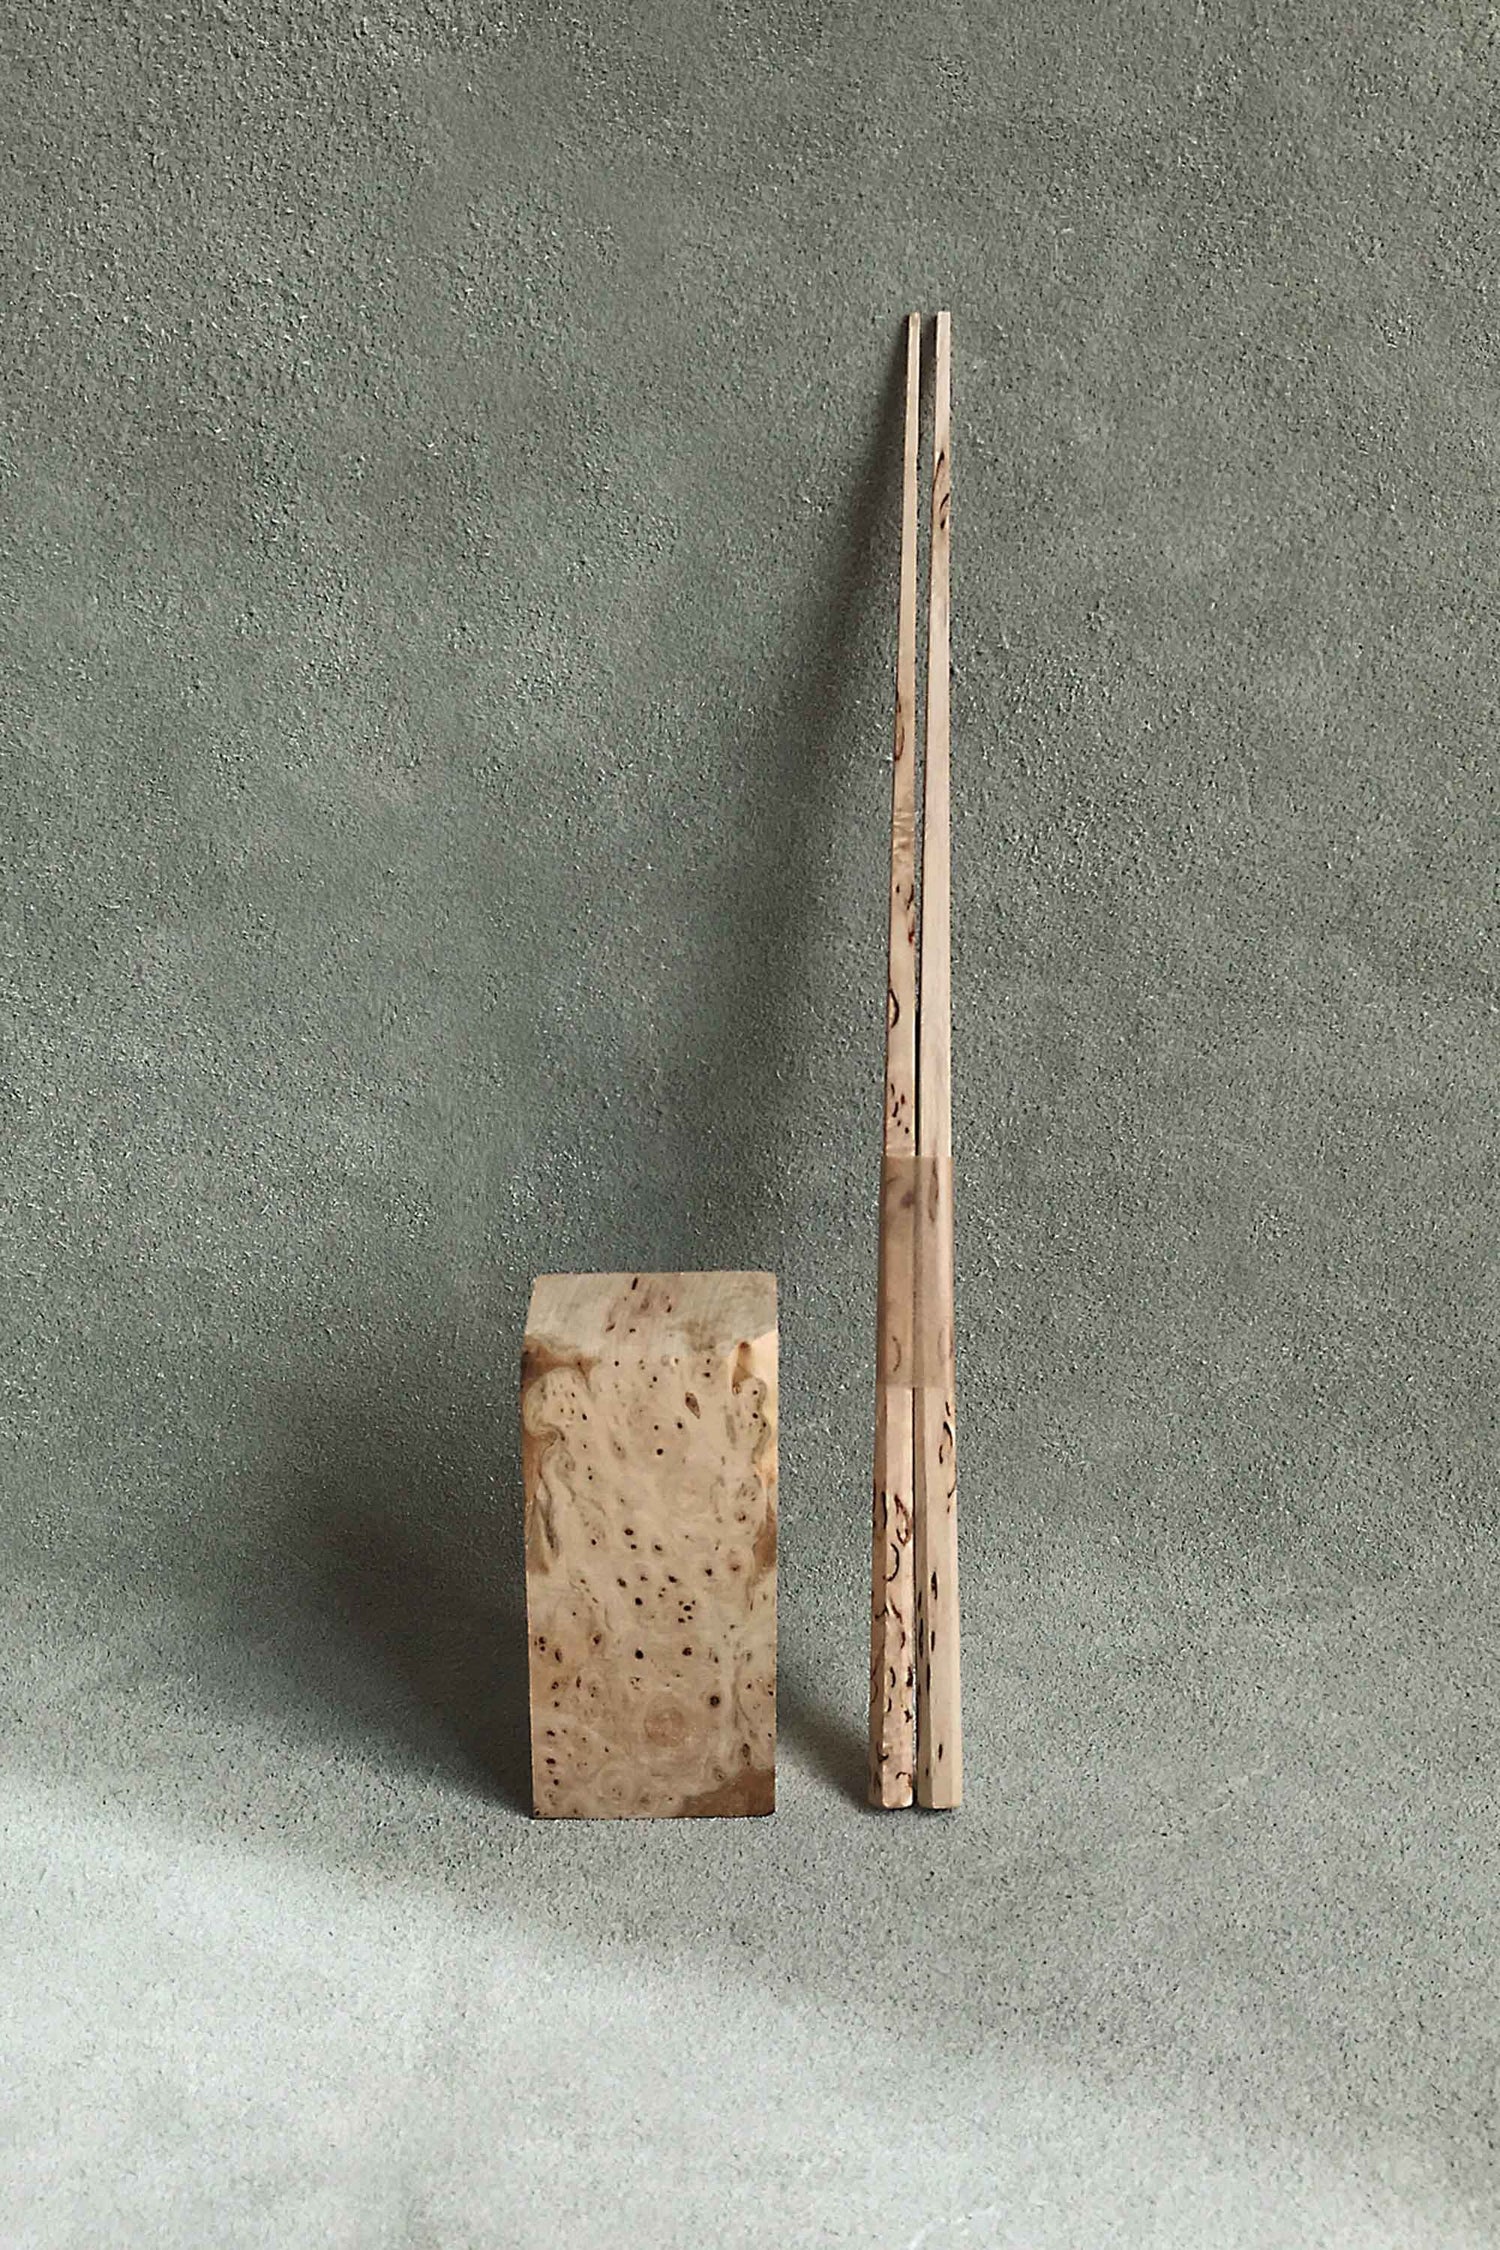 Handmade Birch Wooden Chopsticks with chopstick rest